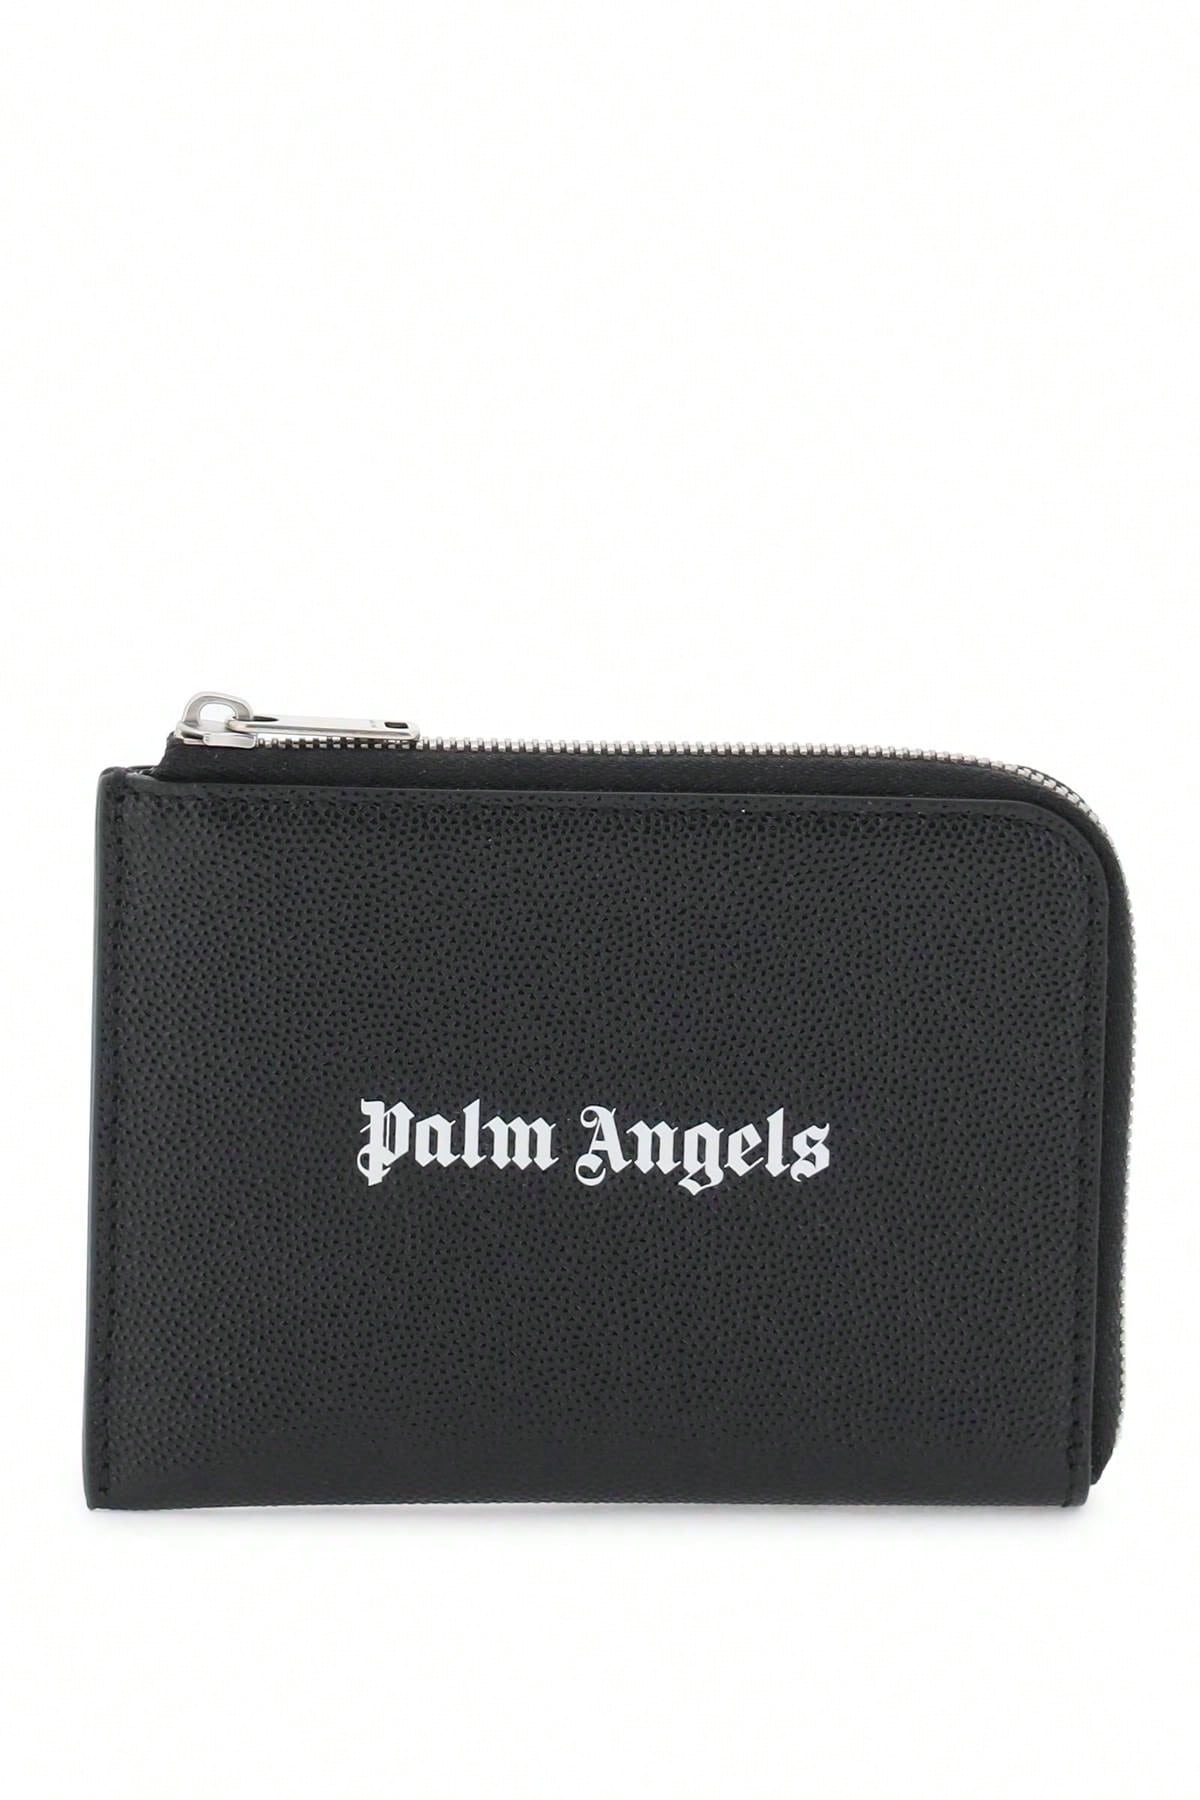 Palm Angels Миниатюрная сумка Palm Angels с выдвижным картхолдером, черный игровой набор fashion angels мини портфолио визажист для монстра